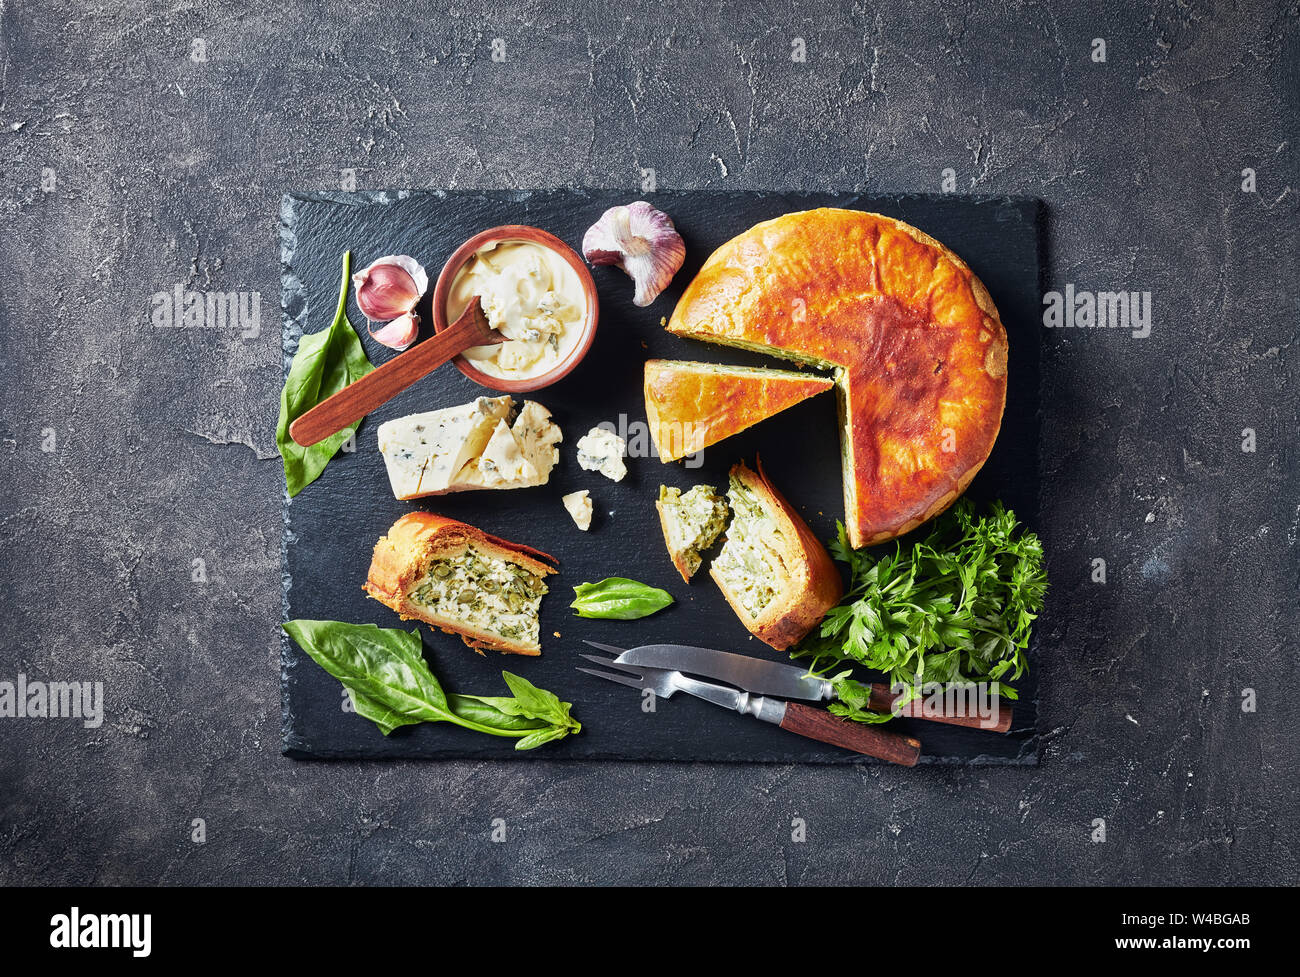 Haricots verts et épinards Tarte au fromage bleu ardoise noire en tranches sur un plateau avec crème au fromage bleu sauce dans un bol sur une table en béton, d'un point de vue horizontal Banque D'Images